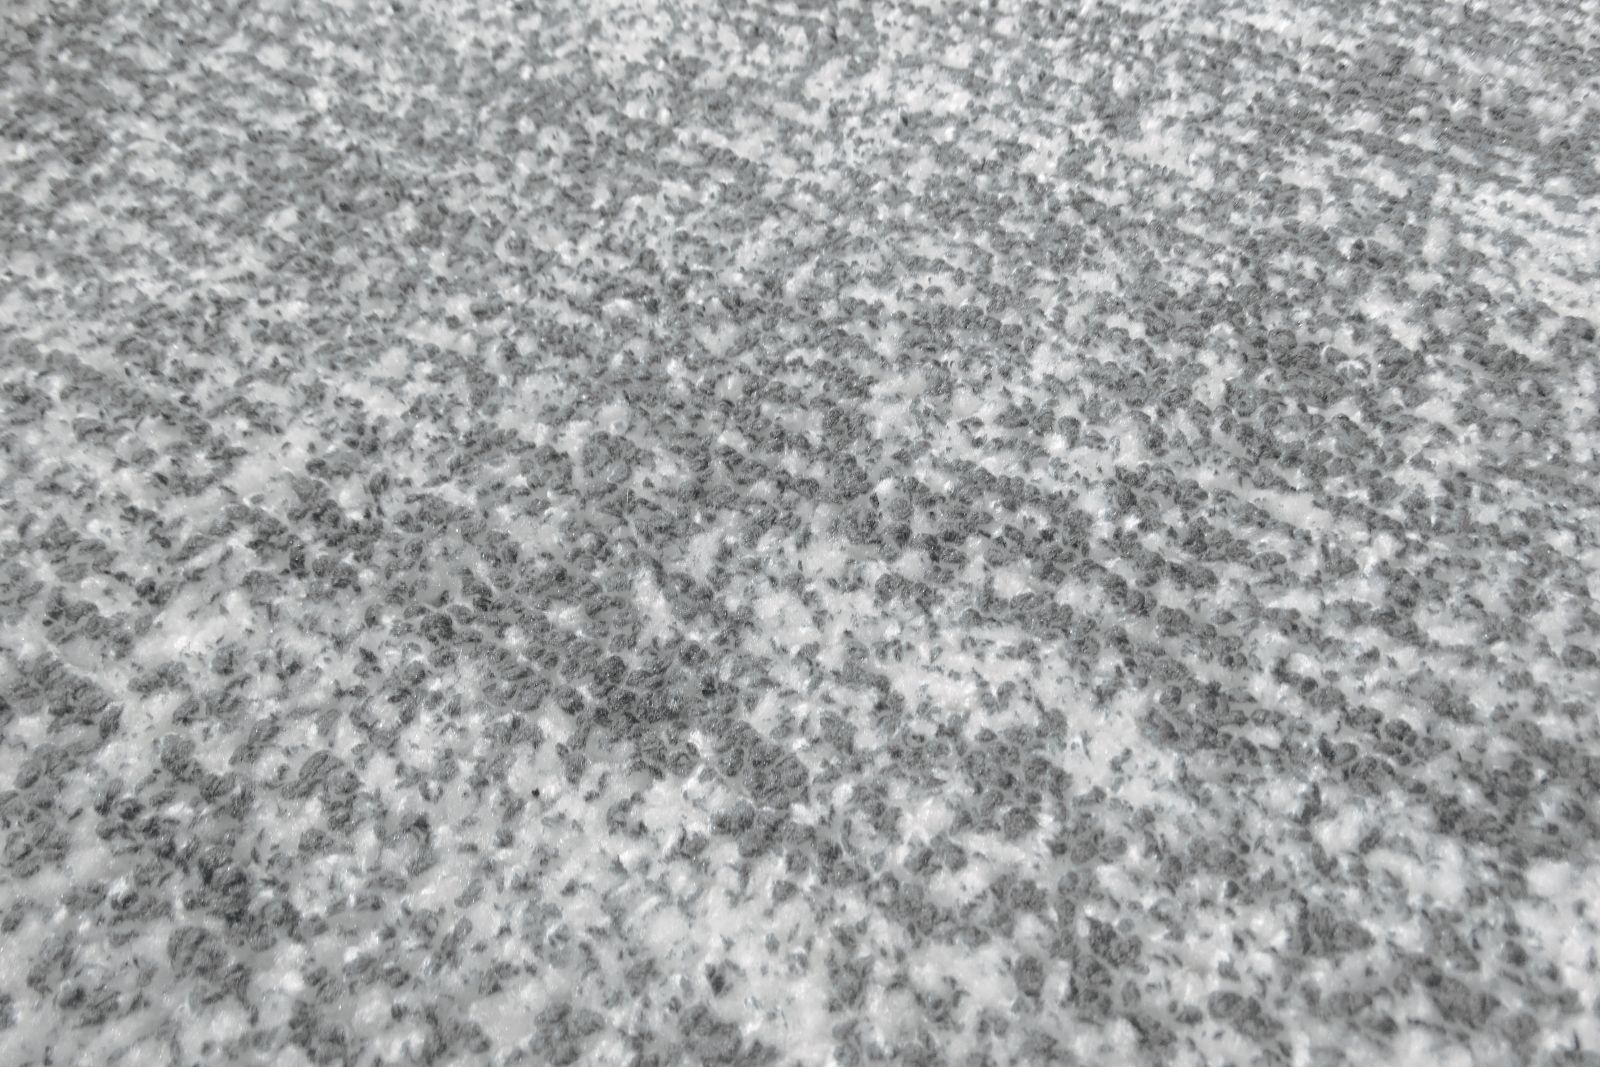 Teppich Etna 110 Grau / Silber 80 cm x 150 cm